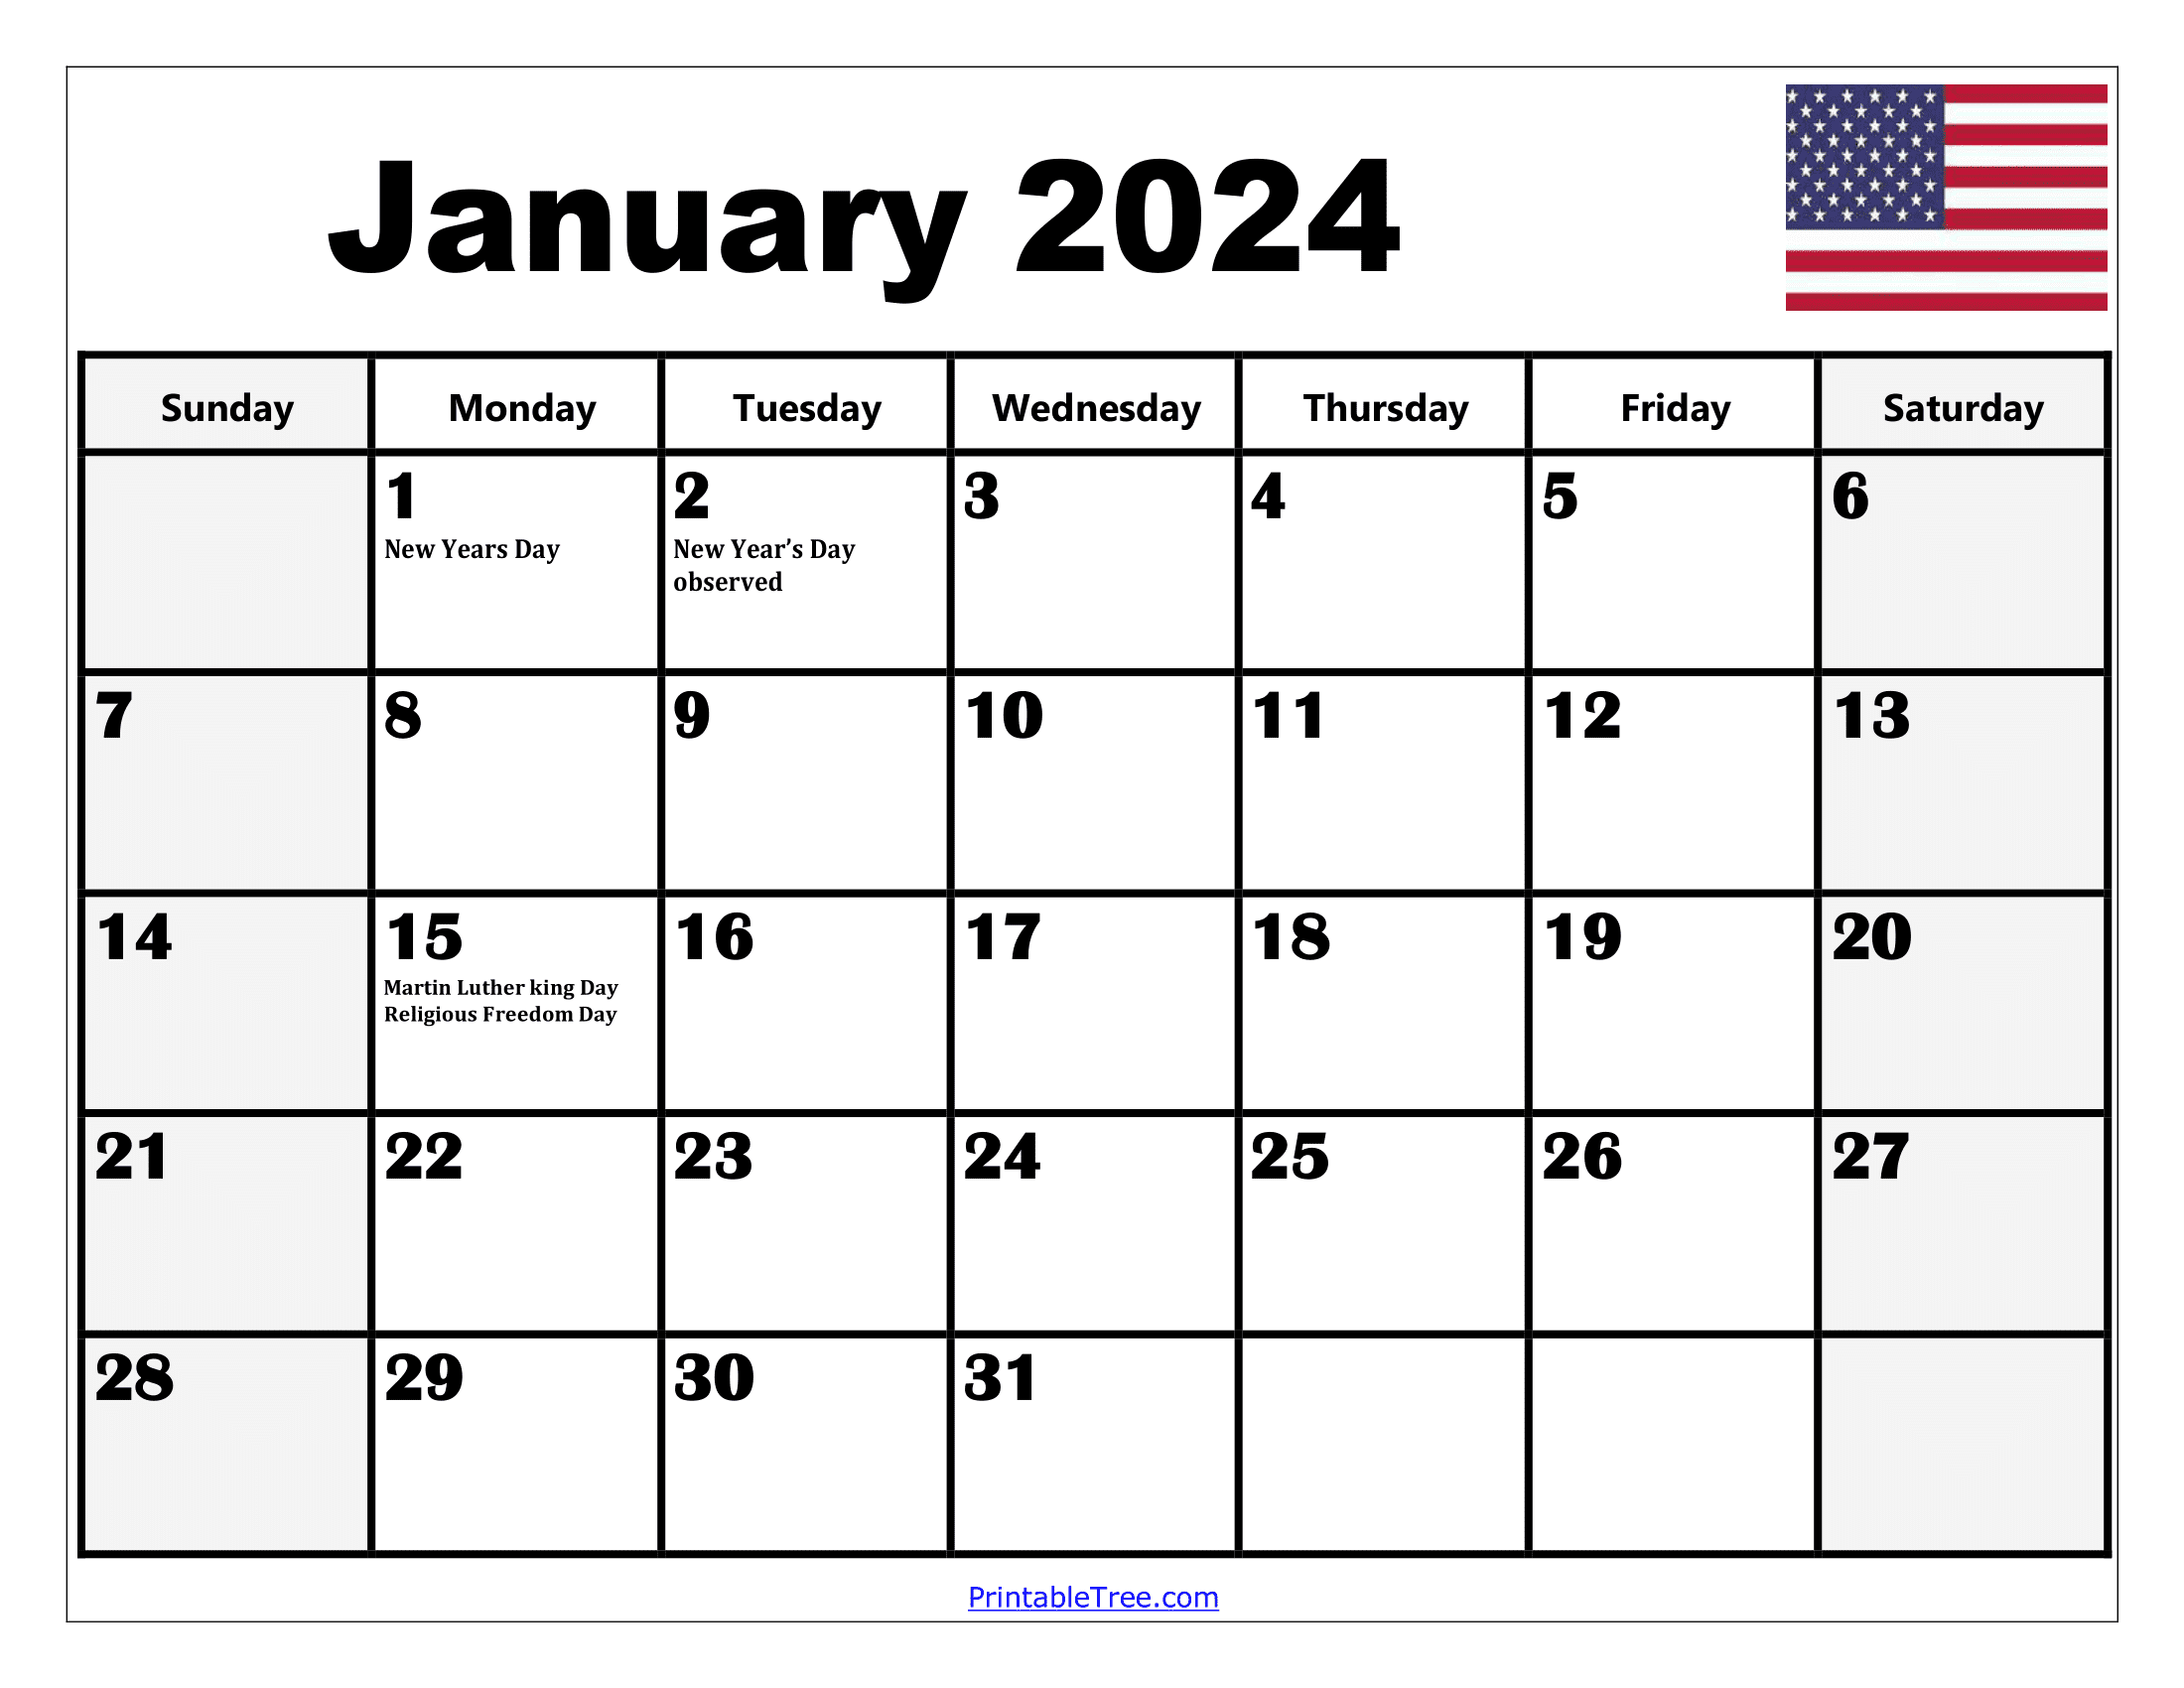 2024 Holiday Calendar Days Free Download Nov 2024 Calendar - Free Printable Calendar 2024 Monthly With Holidays